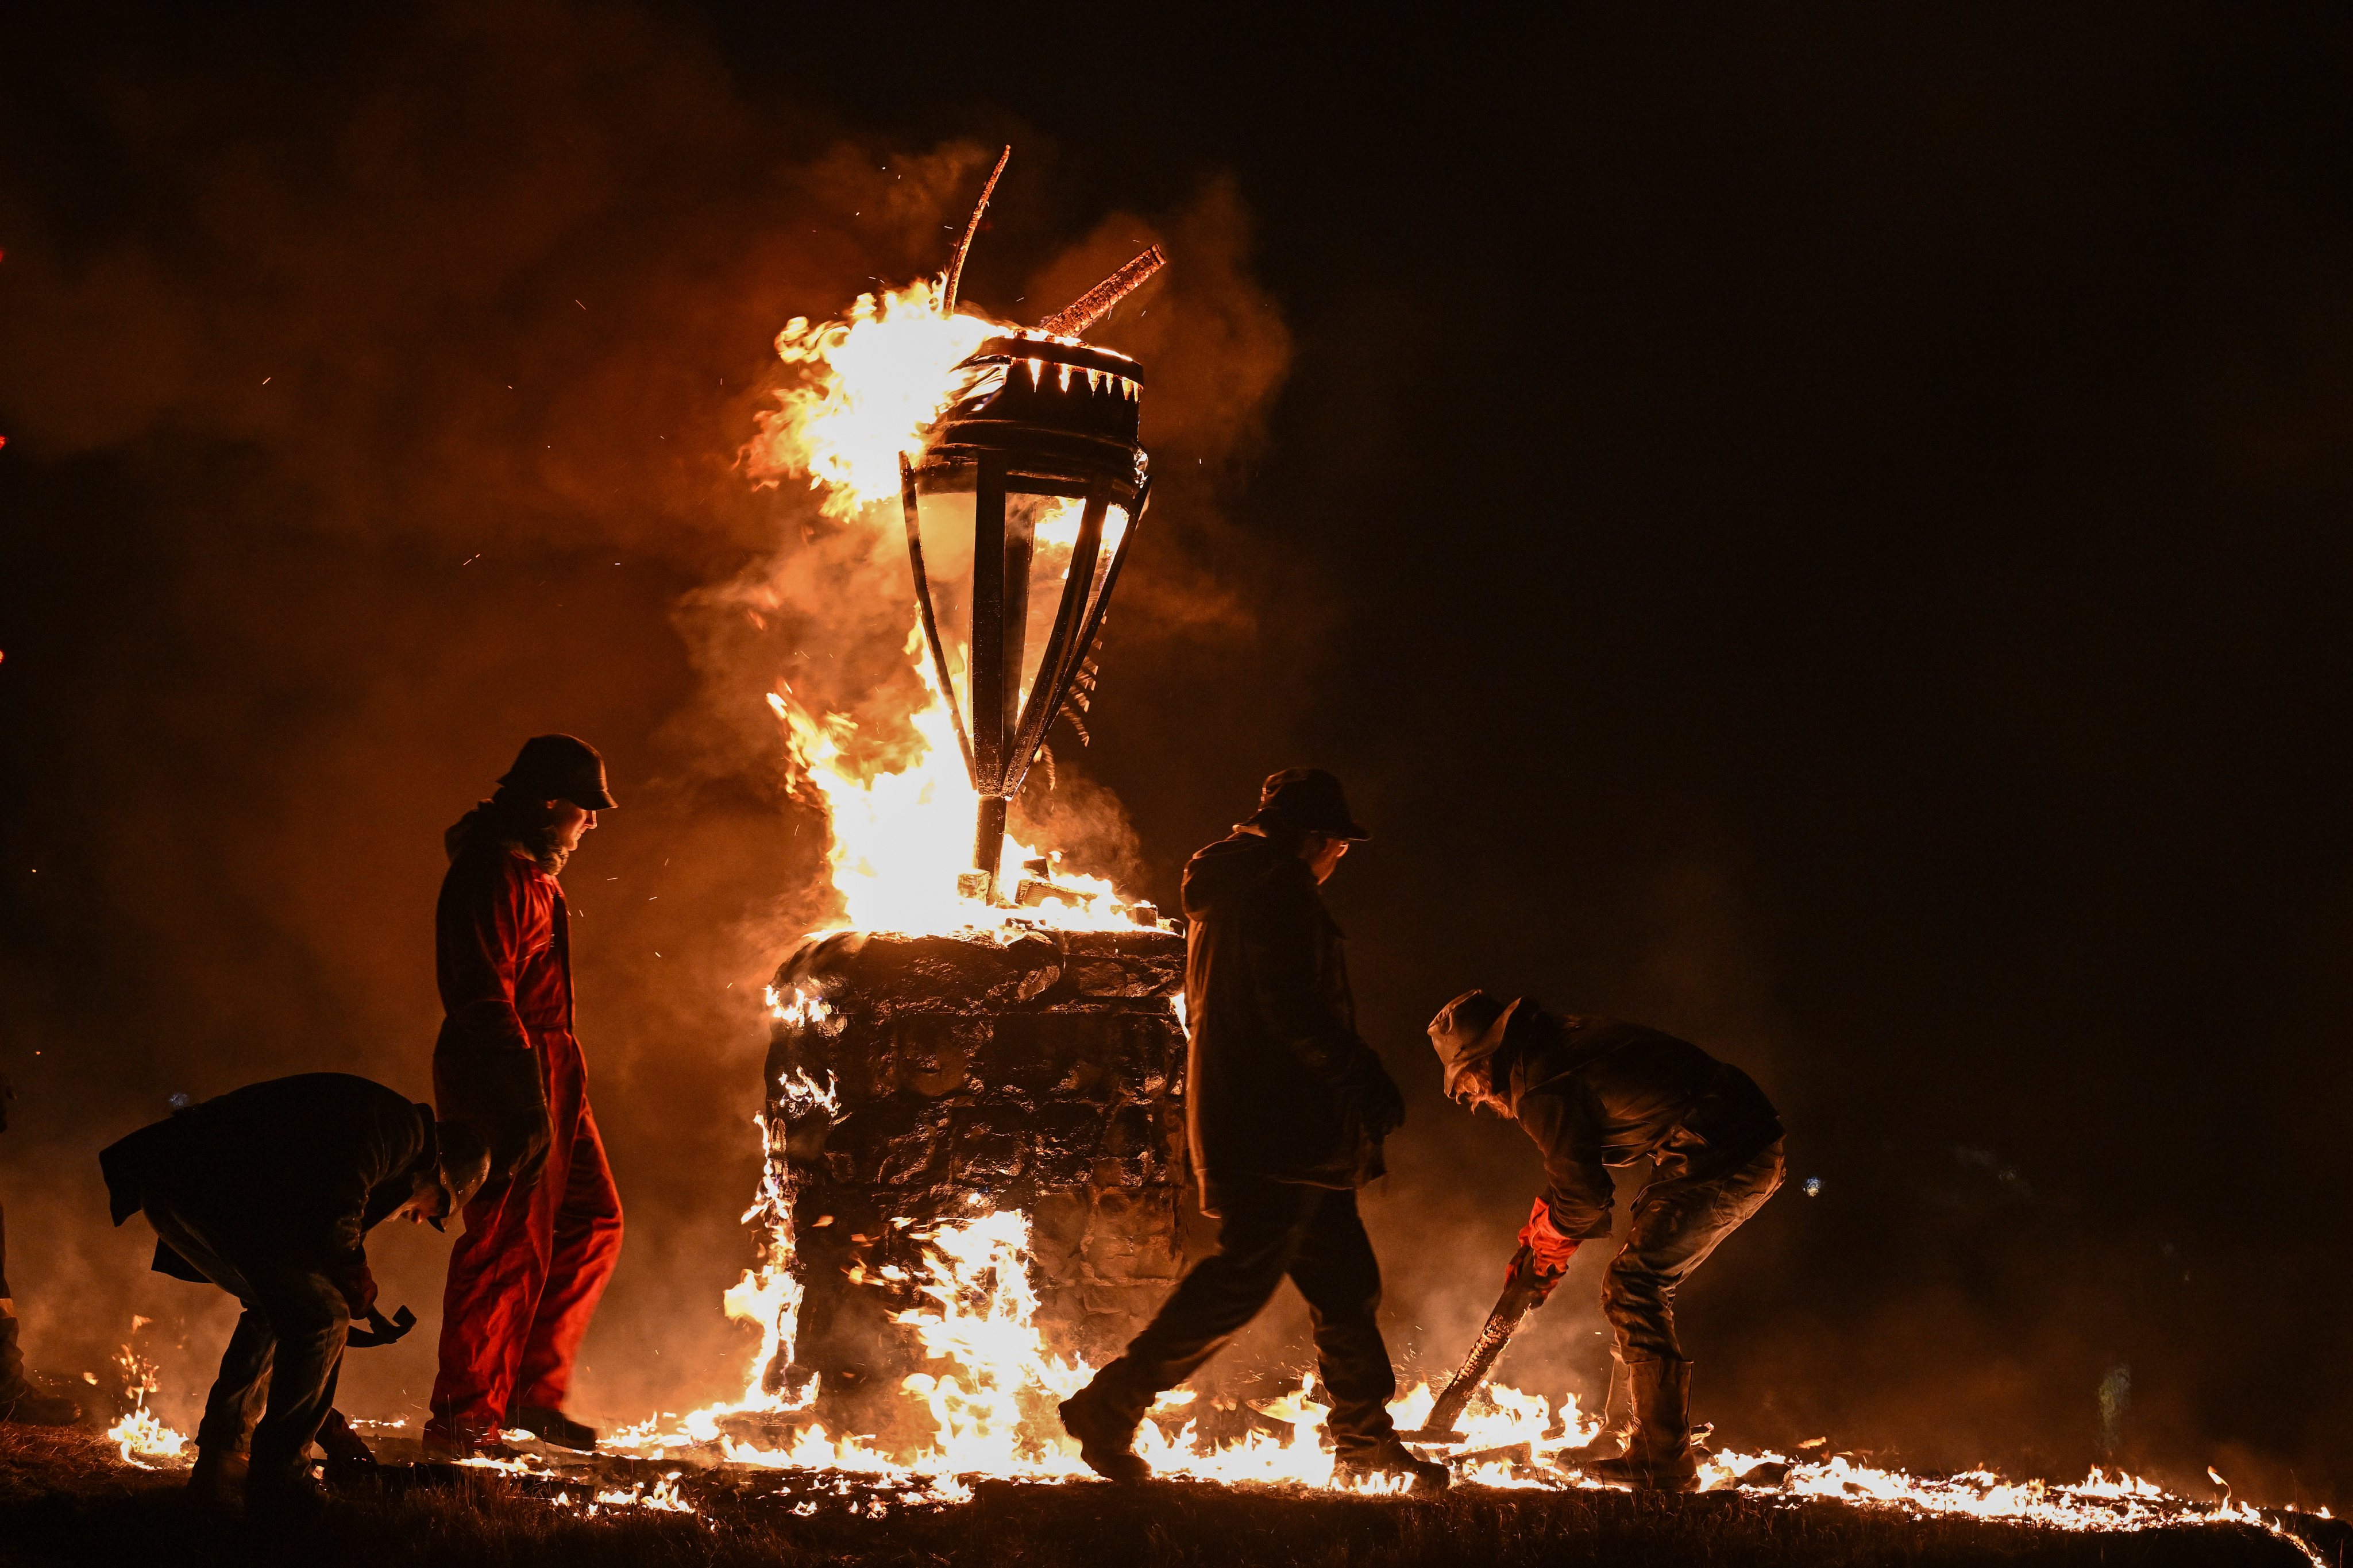 A queima do Clavie, um barril cheio de aparas de madeira e alcatrão, na Escócia, no dia 17. Este evento é geralmente celebrado no dia 11 de janeiro para marcar a entrada no ano novo.